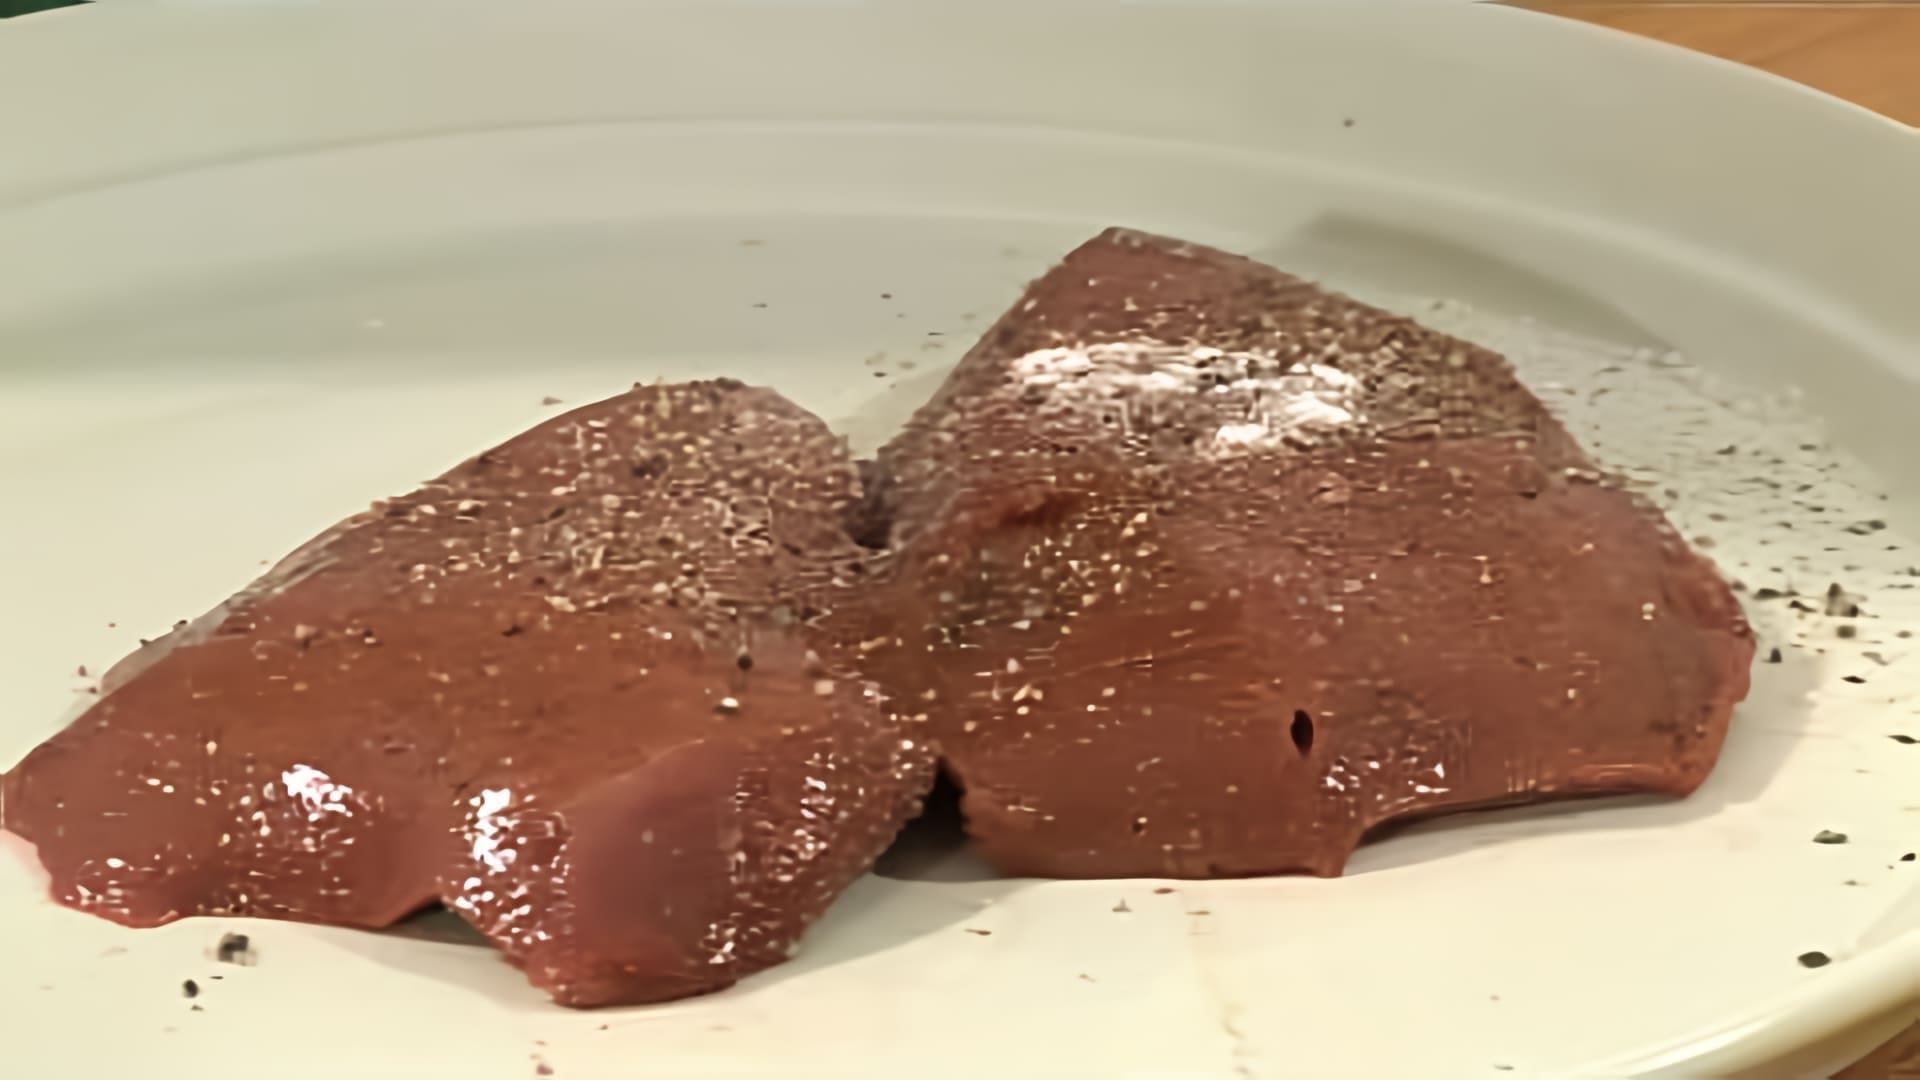 В этом видео демонстрируется рецепт приготовления стейков из говяжьей печени с картофельным пюре и жареным луком